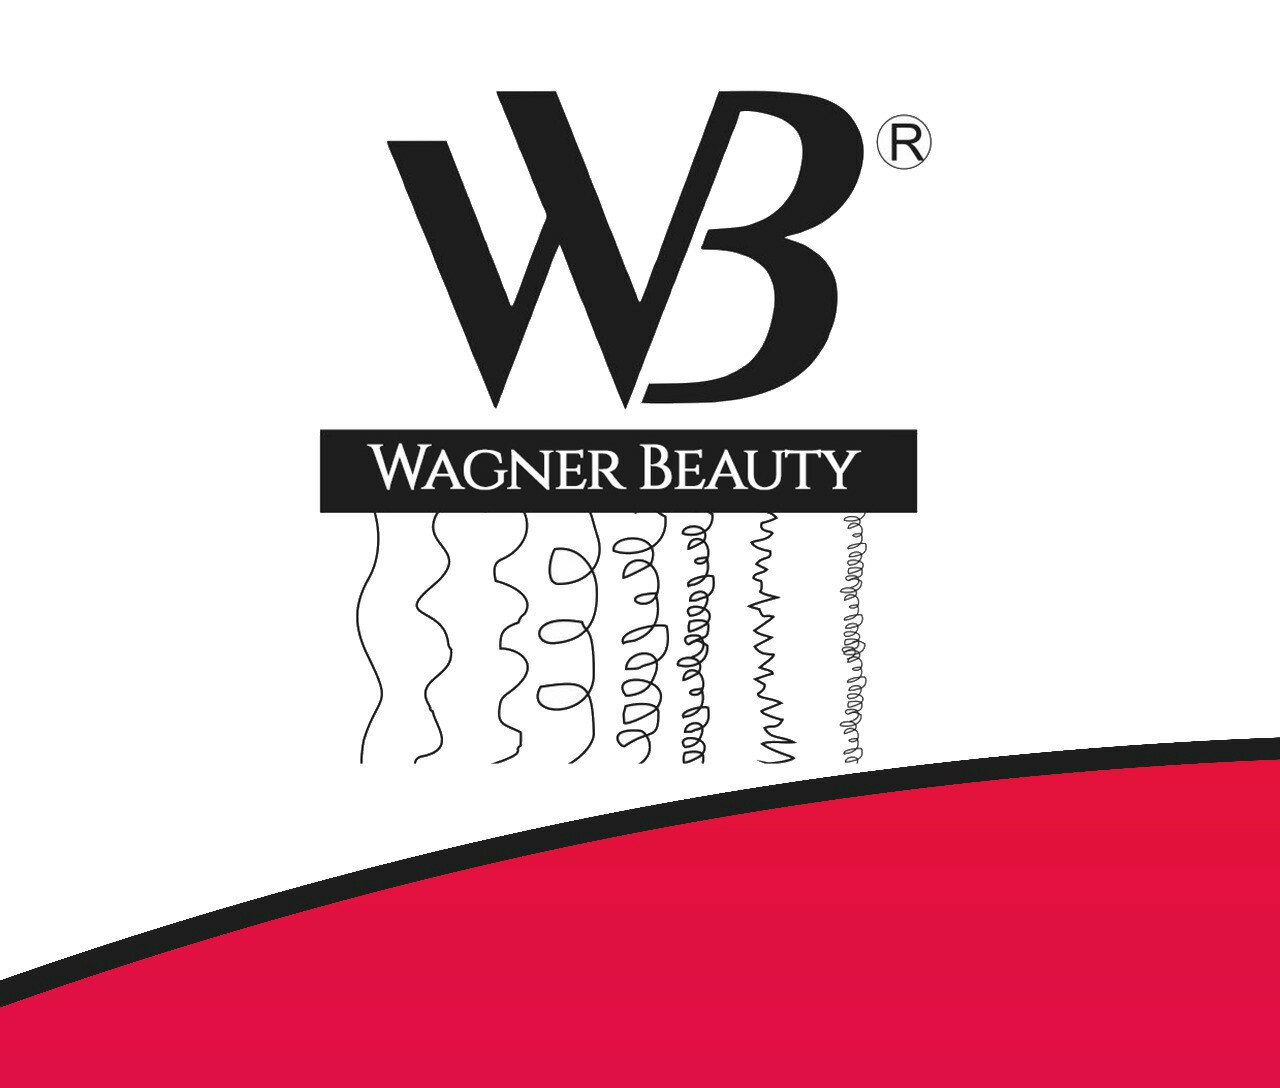 Wagner Beauty